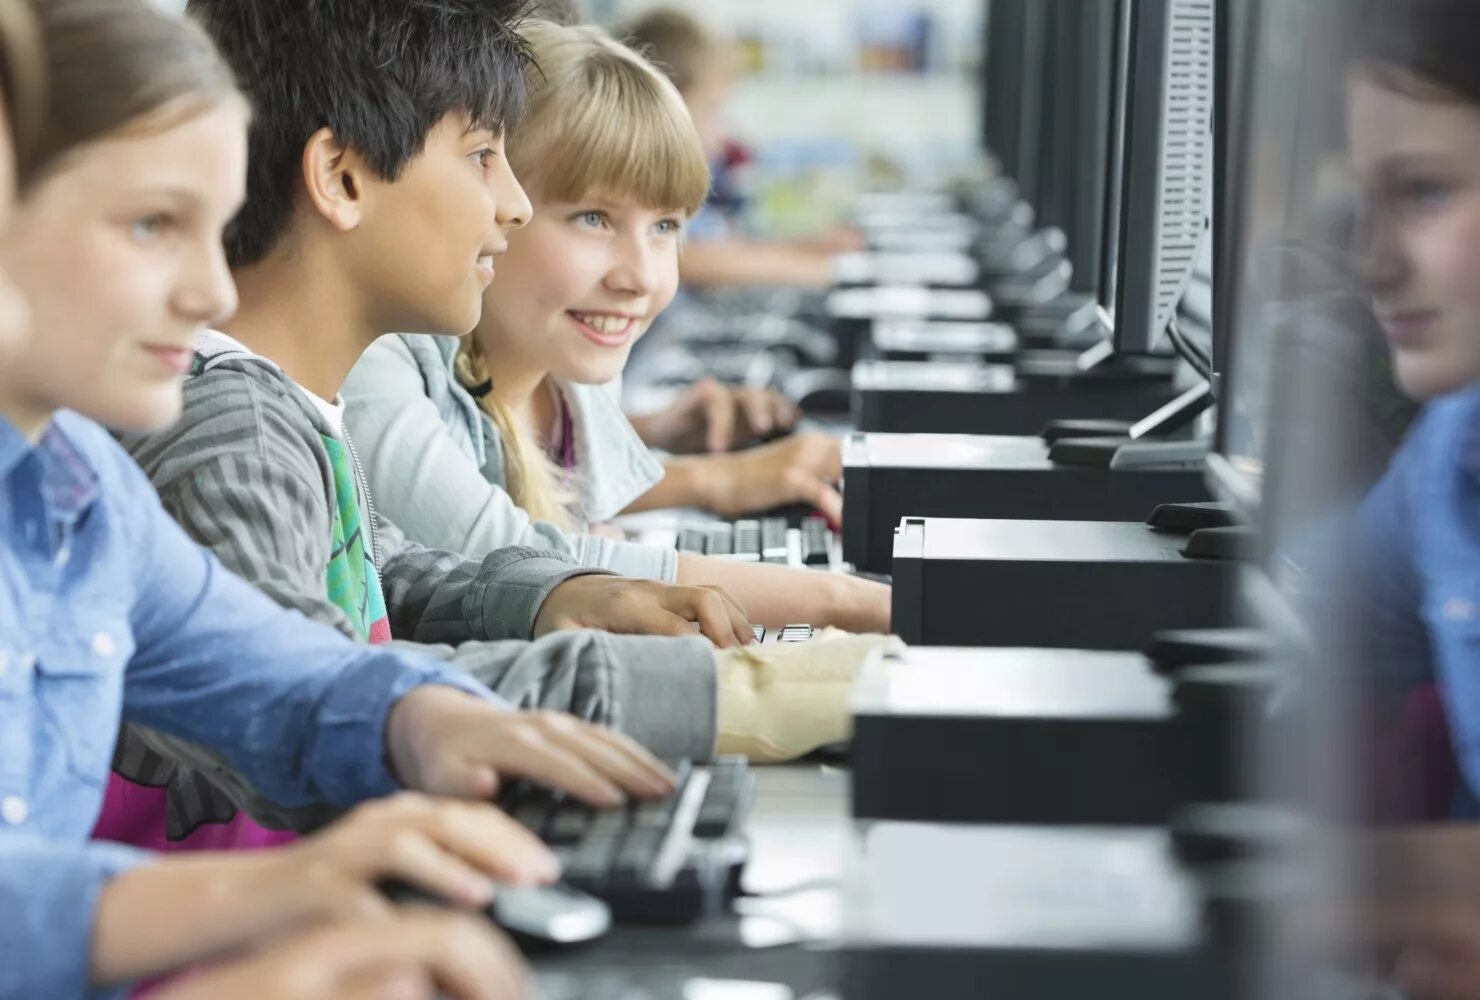 Компьютер для школьника. Компьютер в школе. Ученик за компьютером. Дети за компьютером в школе. Готовый бизнес для школьников